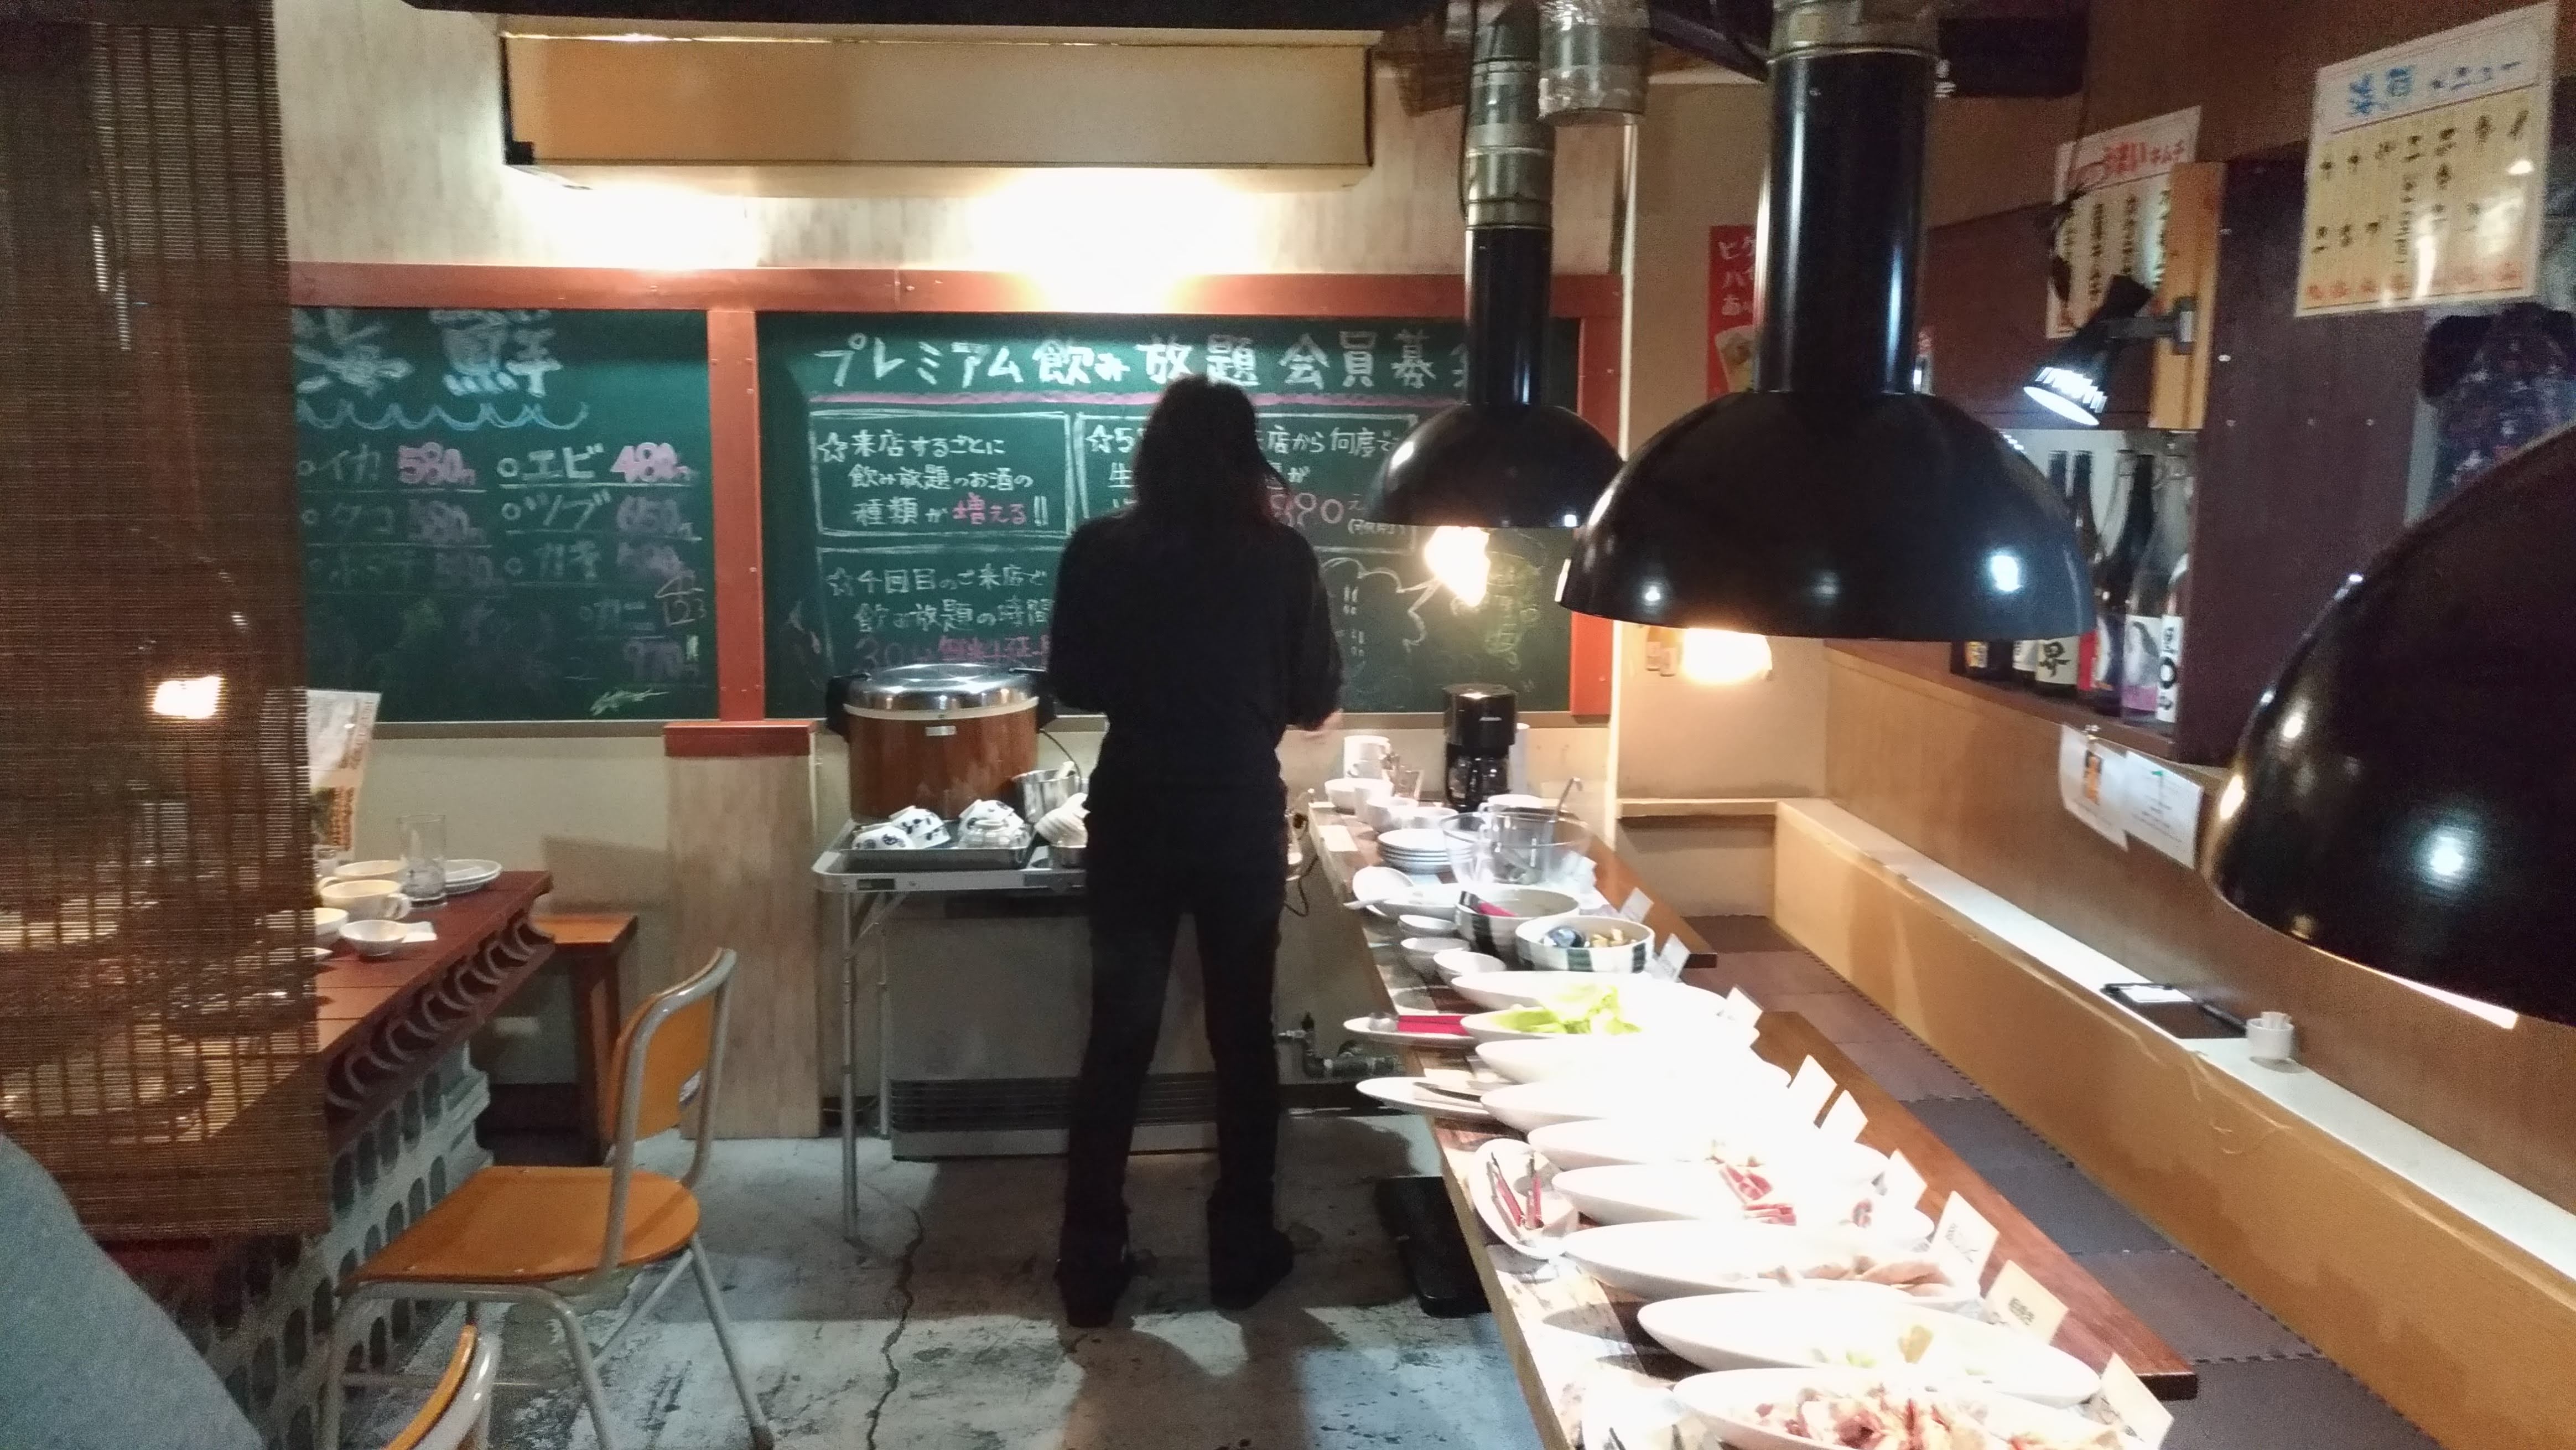 ミウラバーベキューが札幌焼肉ランチバイキング最安値店決定だぁ Everydayに四方山な情報を